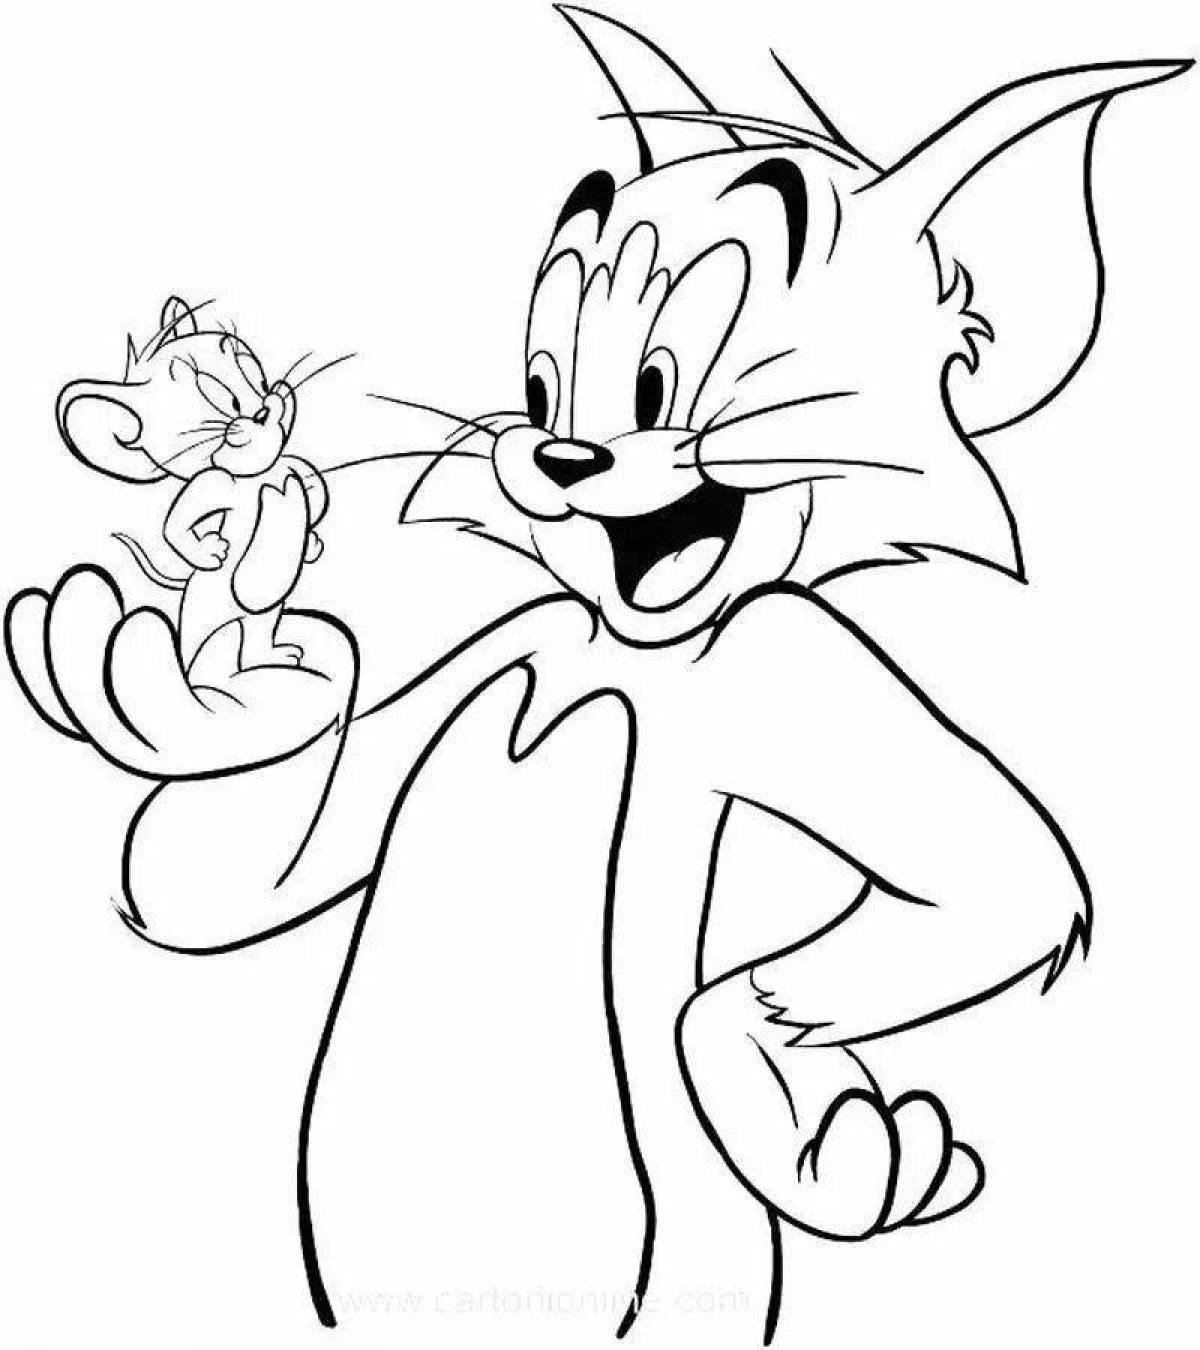 Как рисовать том. Срисовать Джерри из Тома и Джерри. Raskraska dlya detey Tom i Jerry. Том и Джерри. Раскраска. Рисунки для срисовки из мультиков.